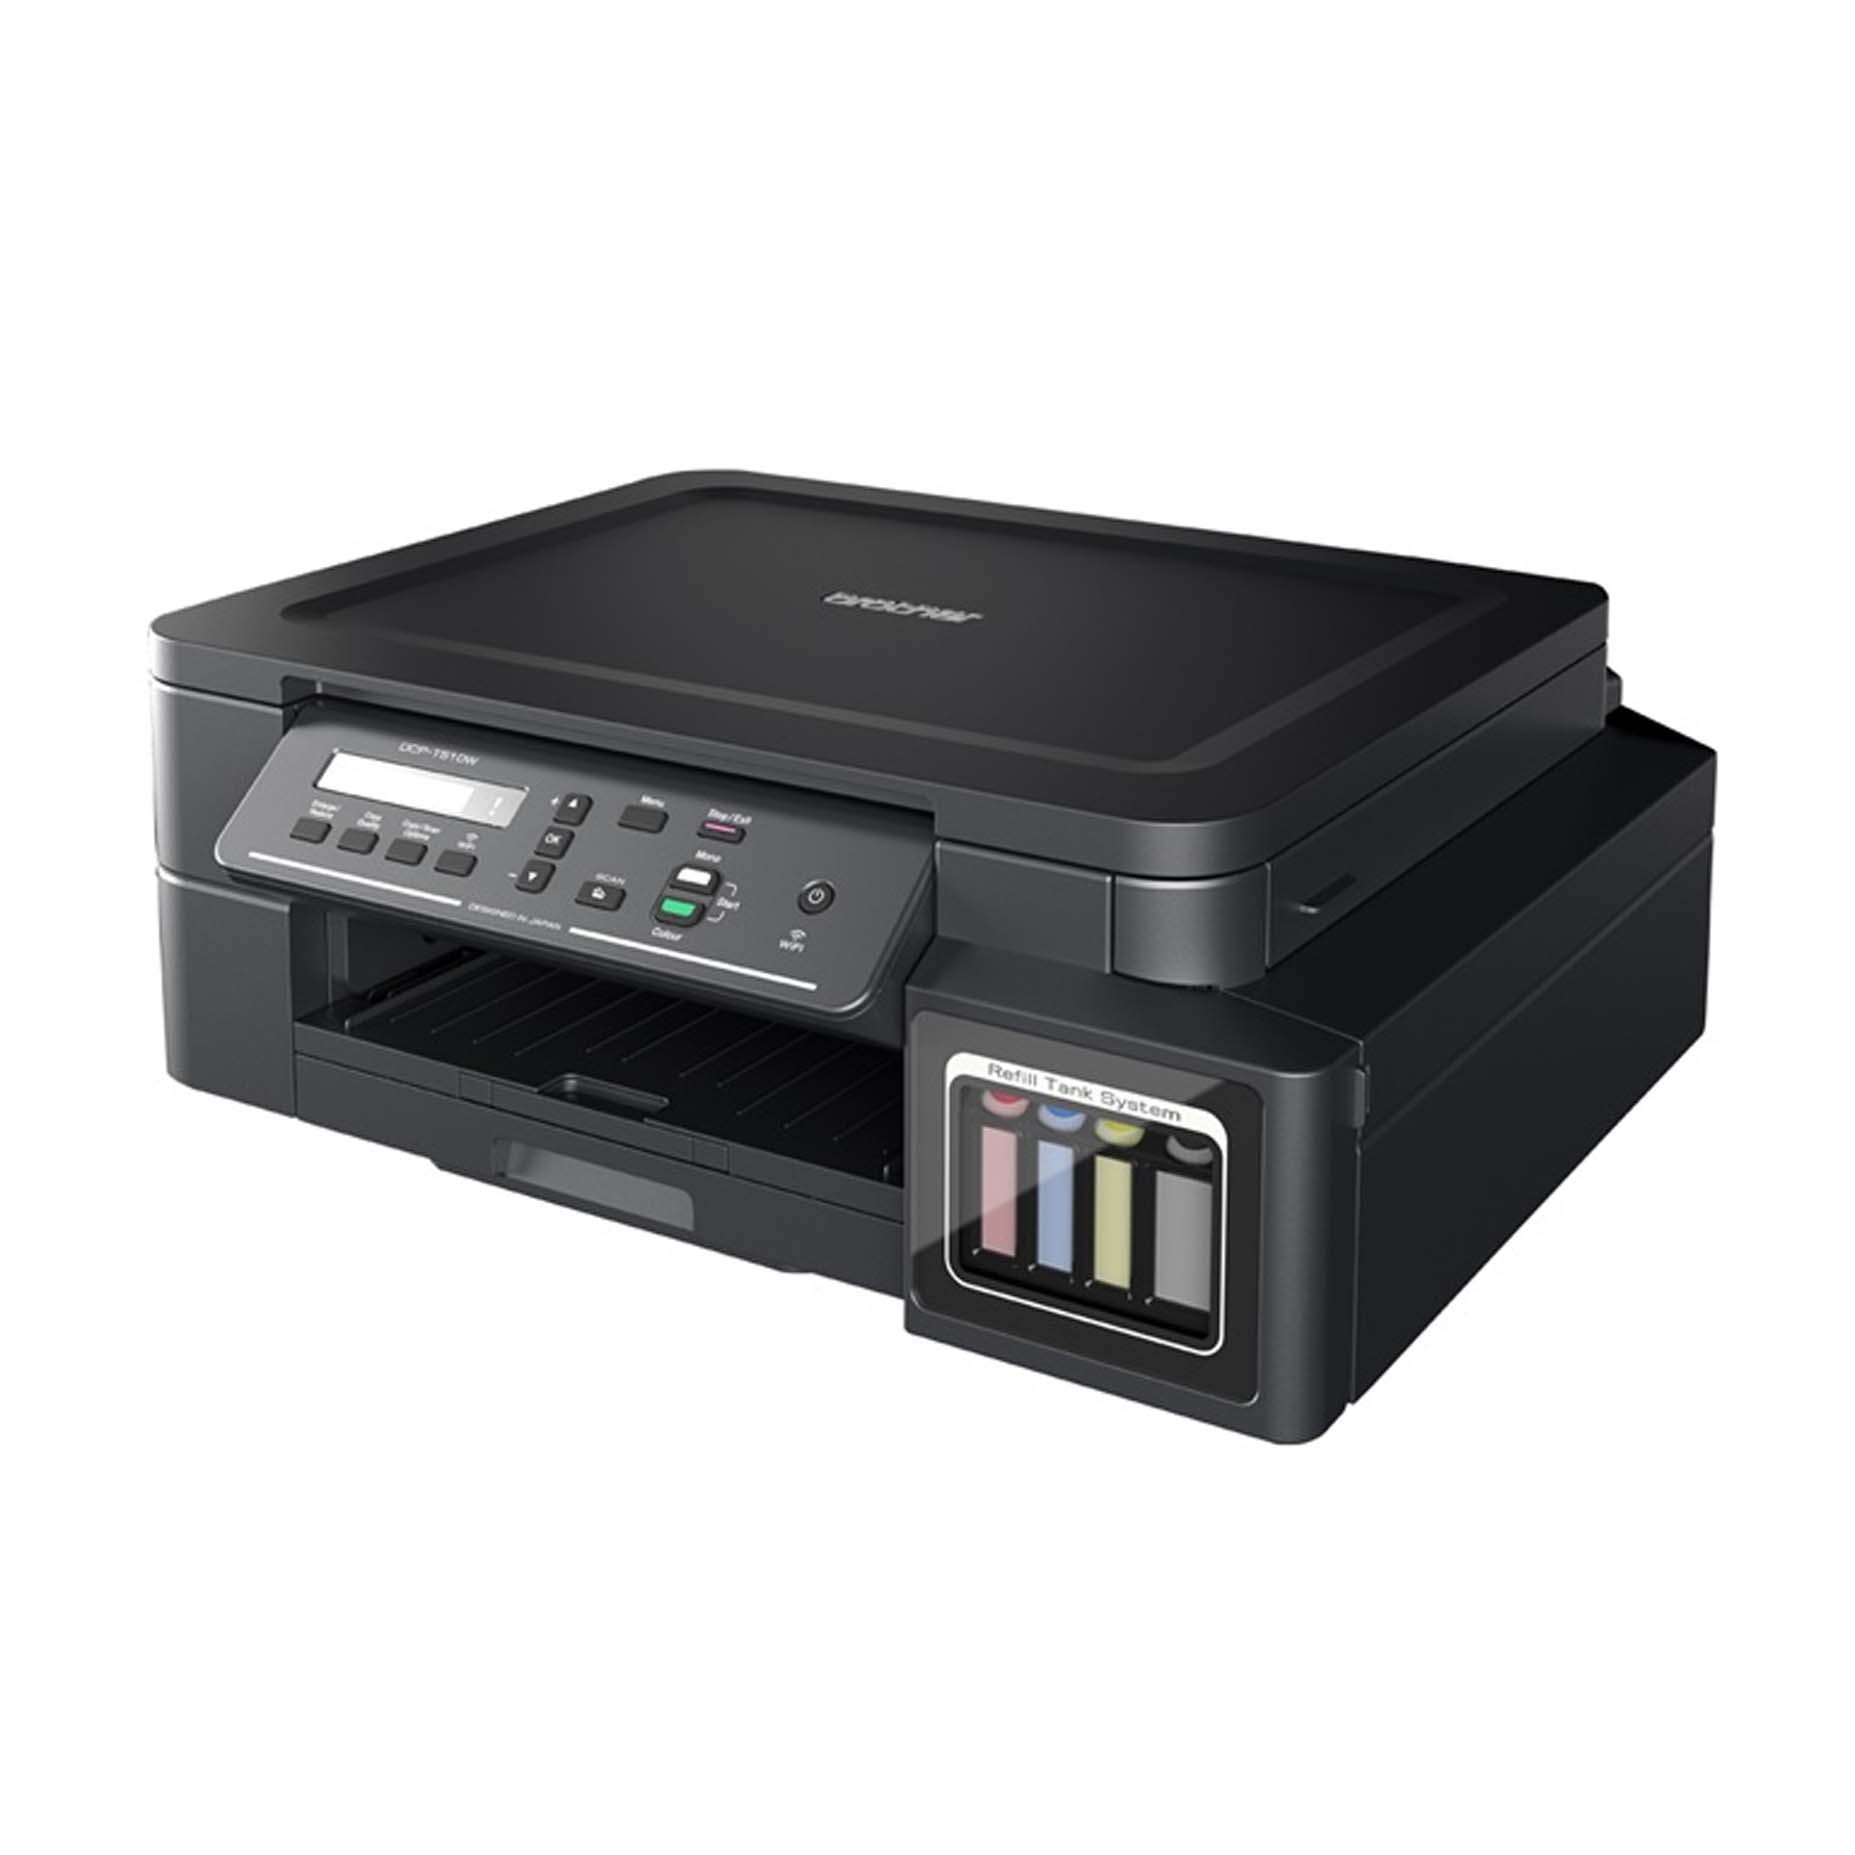 Harga Printer Brother DCP-T510W Wifi Inkjet Multifungsi A4